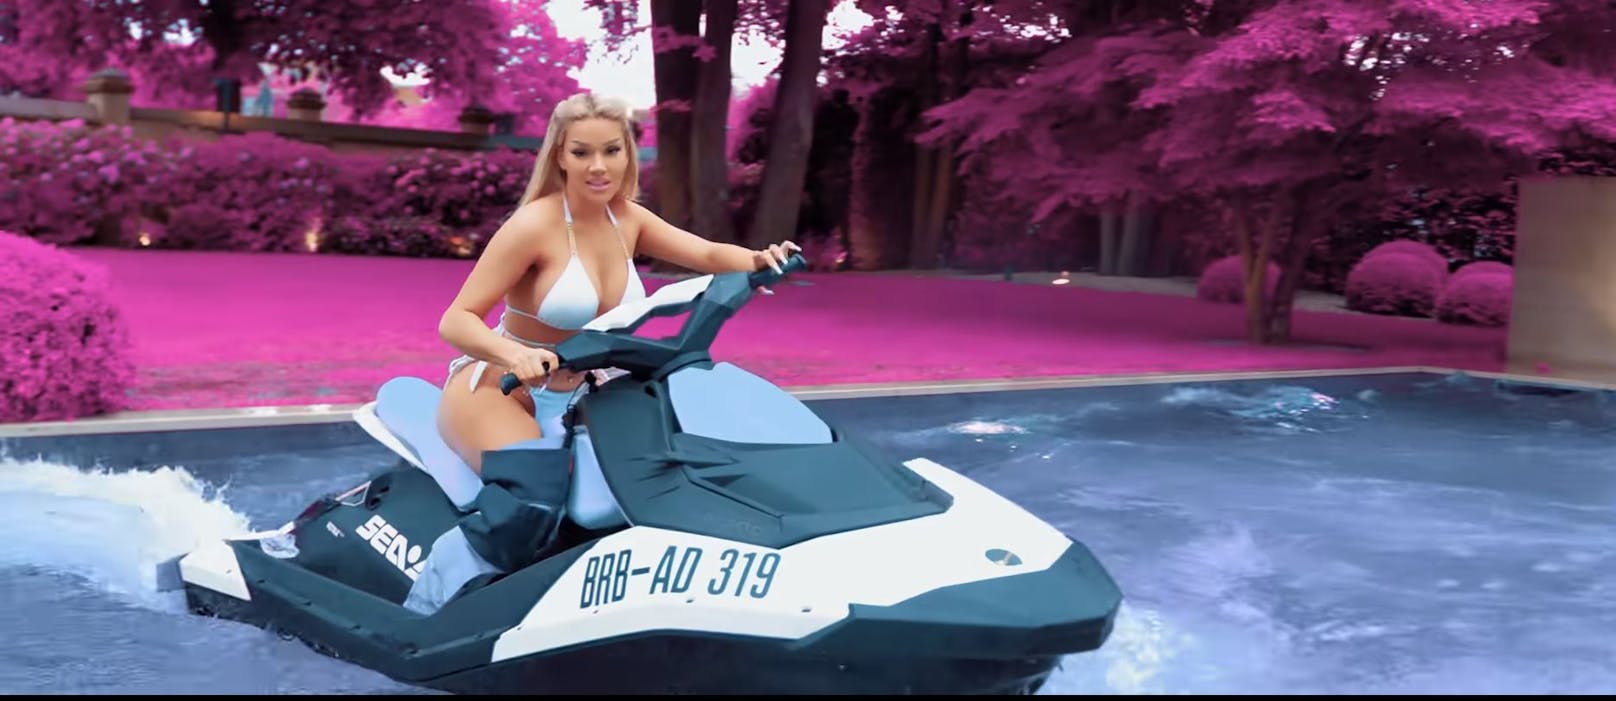 Für ihr Musikvideo zu "Hoes Up G's Down" cruise Shirin David mit einem Jetski im Pool. Ein teurer Spaß: Die Rapperin musste 40.000 Euro Strafe zahlen.